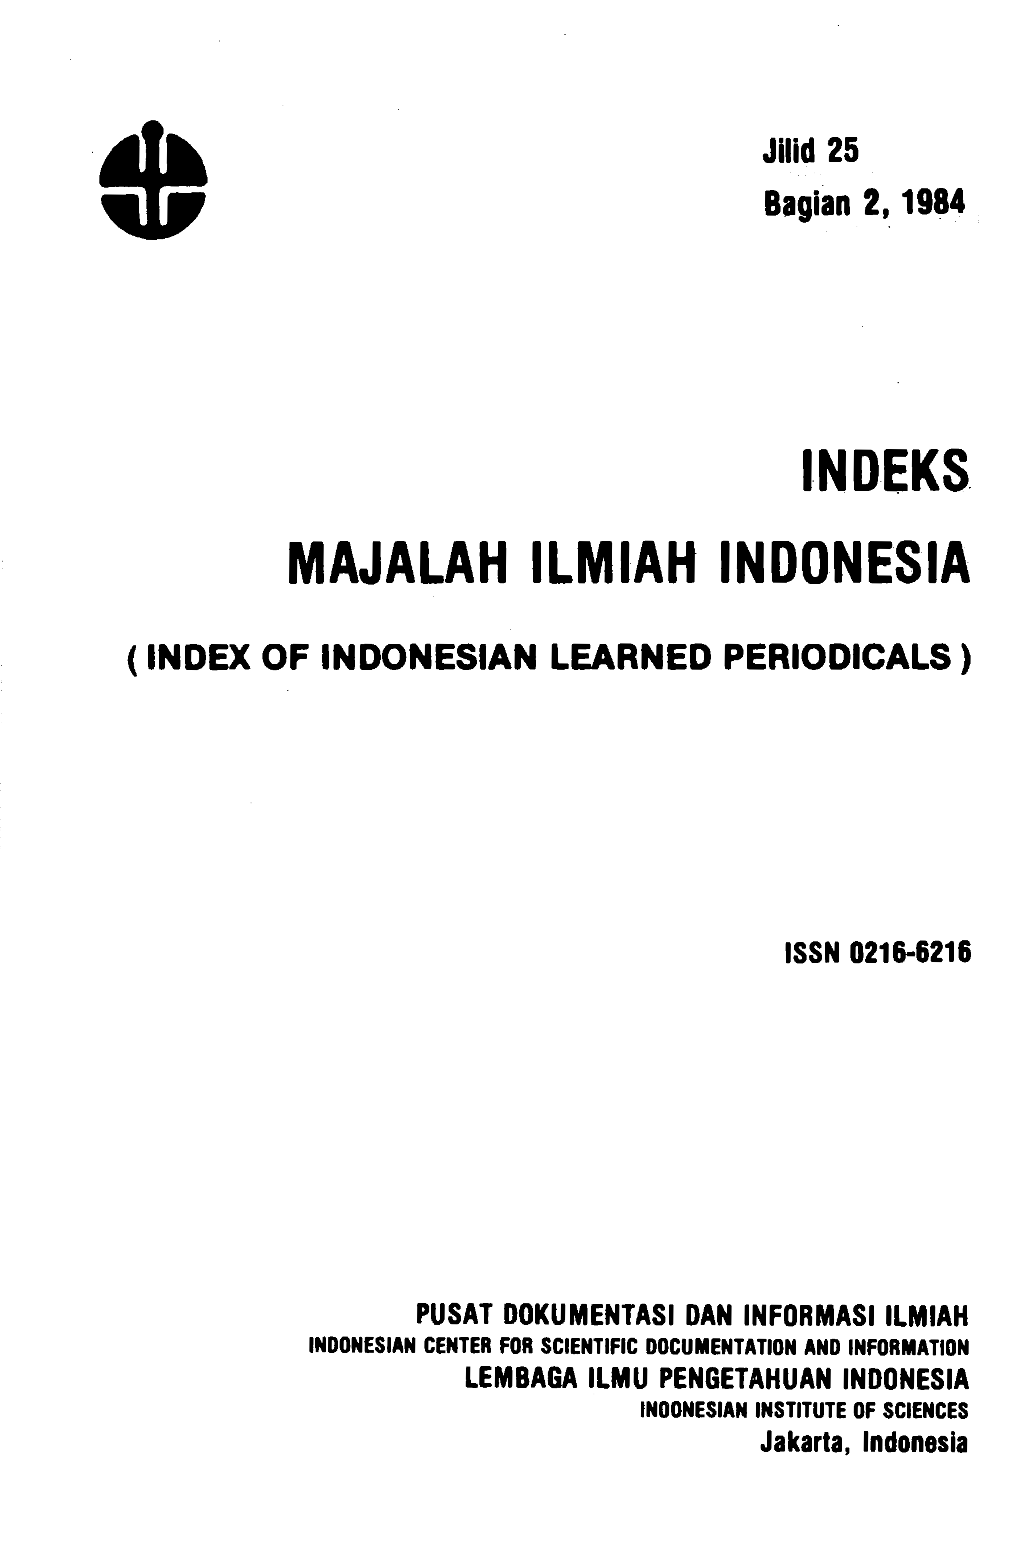 Indeks. Majalah Ilmiah Indonesia